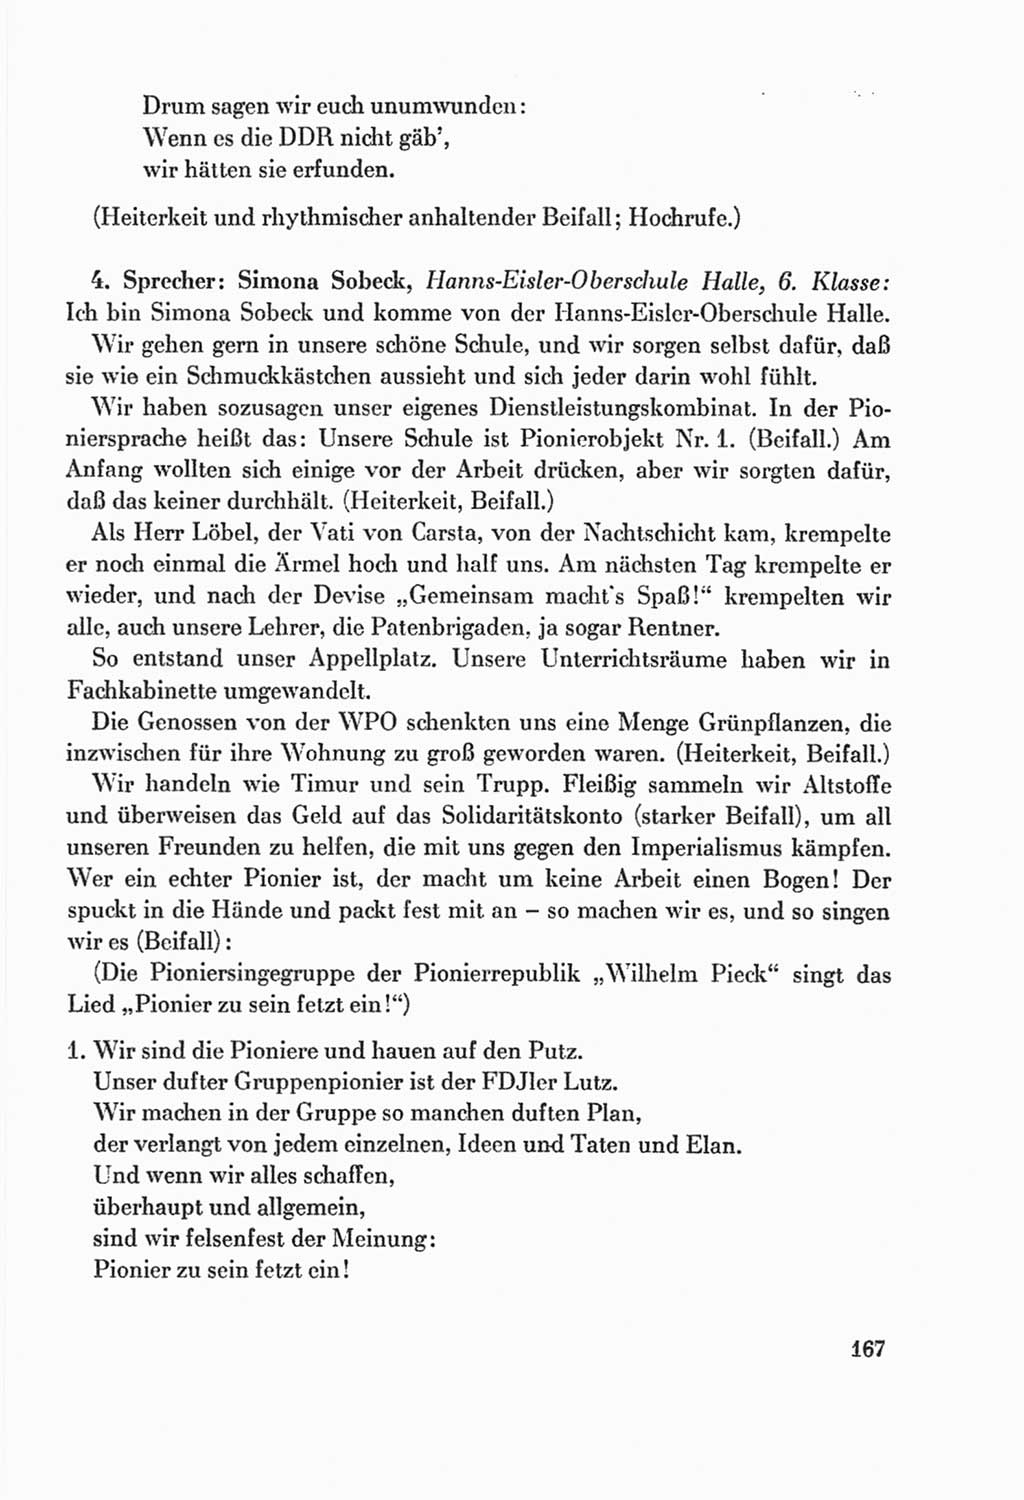 Protokoll der Verhandlungen des Ⅸ. Parteitages der Sozialistischen Einheitspartei Deutschlands (SED) [Deutsche Demokratische Republik (DDR)] 1976, Band 2, Seite 167 (Prot. Verh. Ⅸ. PT SED DDR 1976, Bd. 2, S. 167)